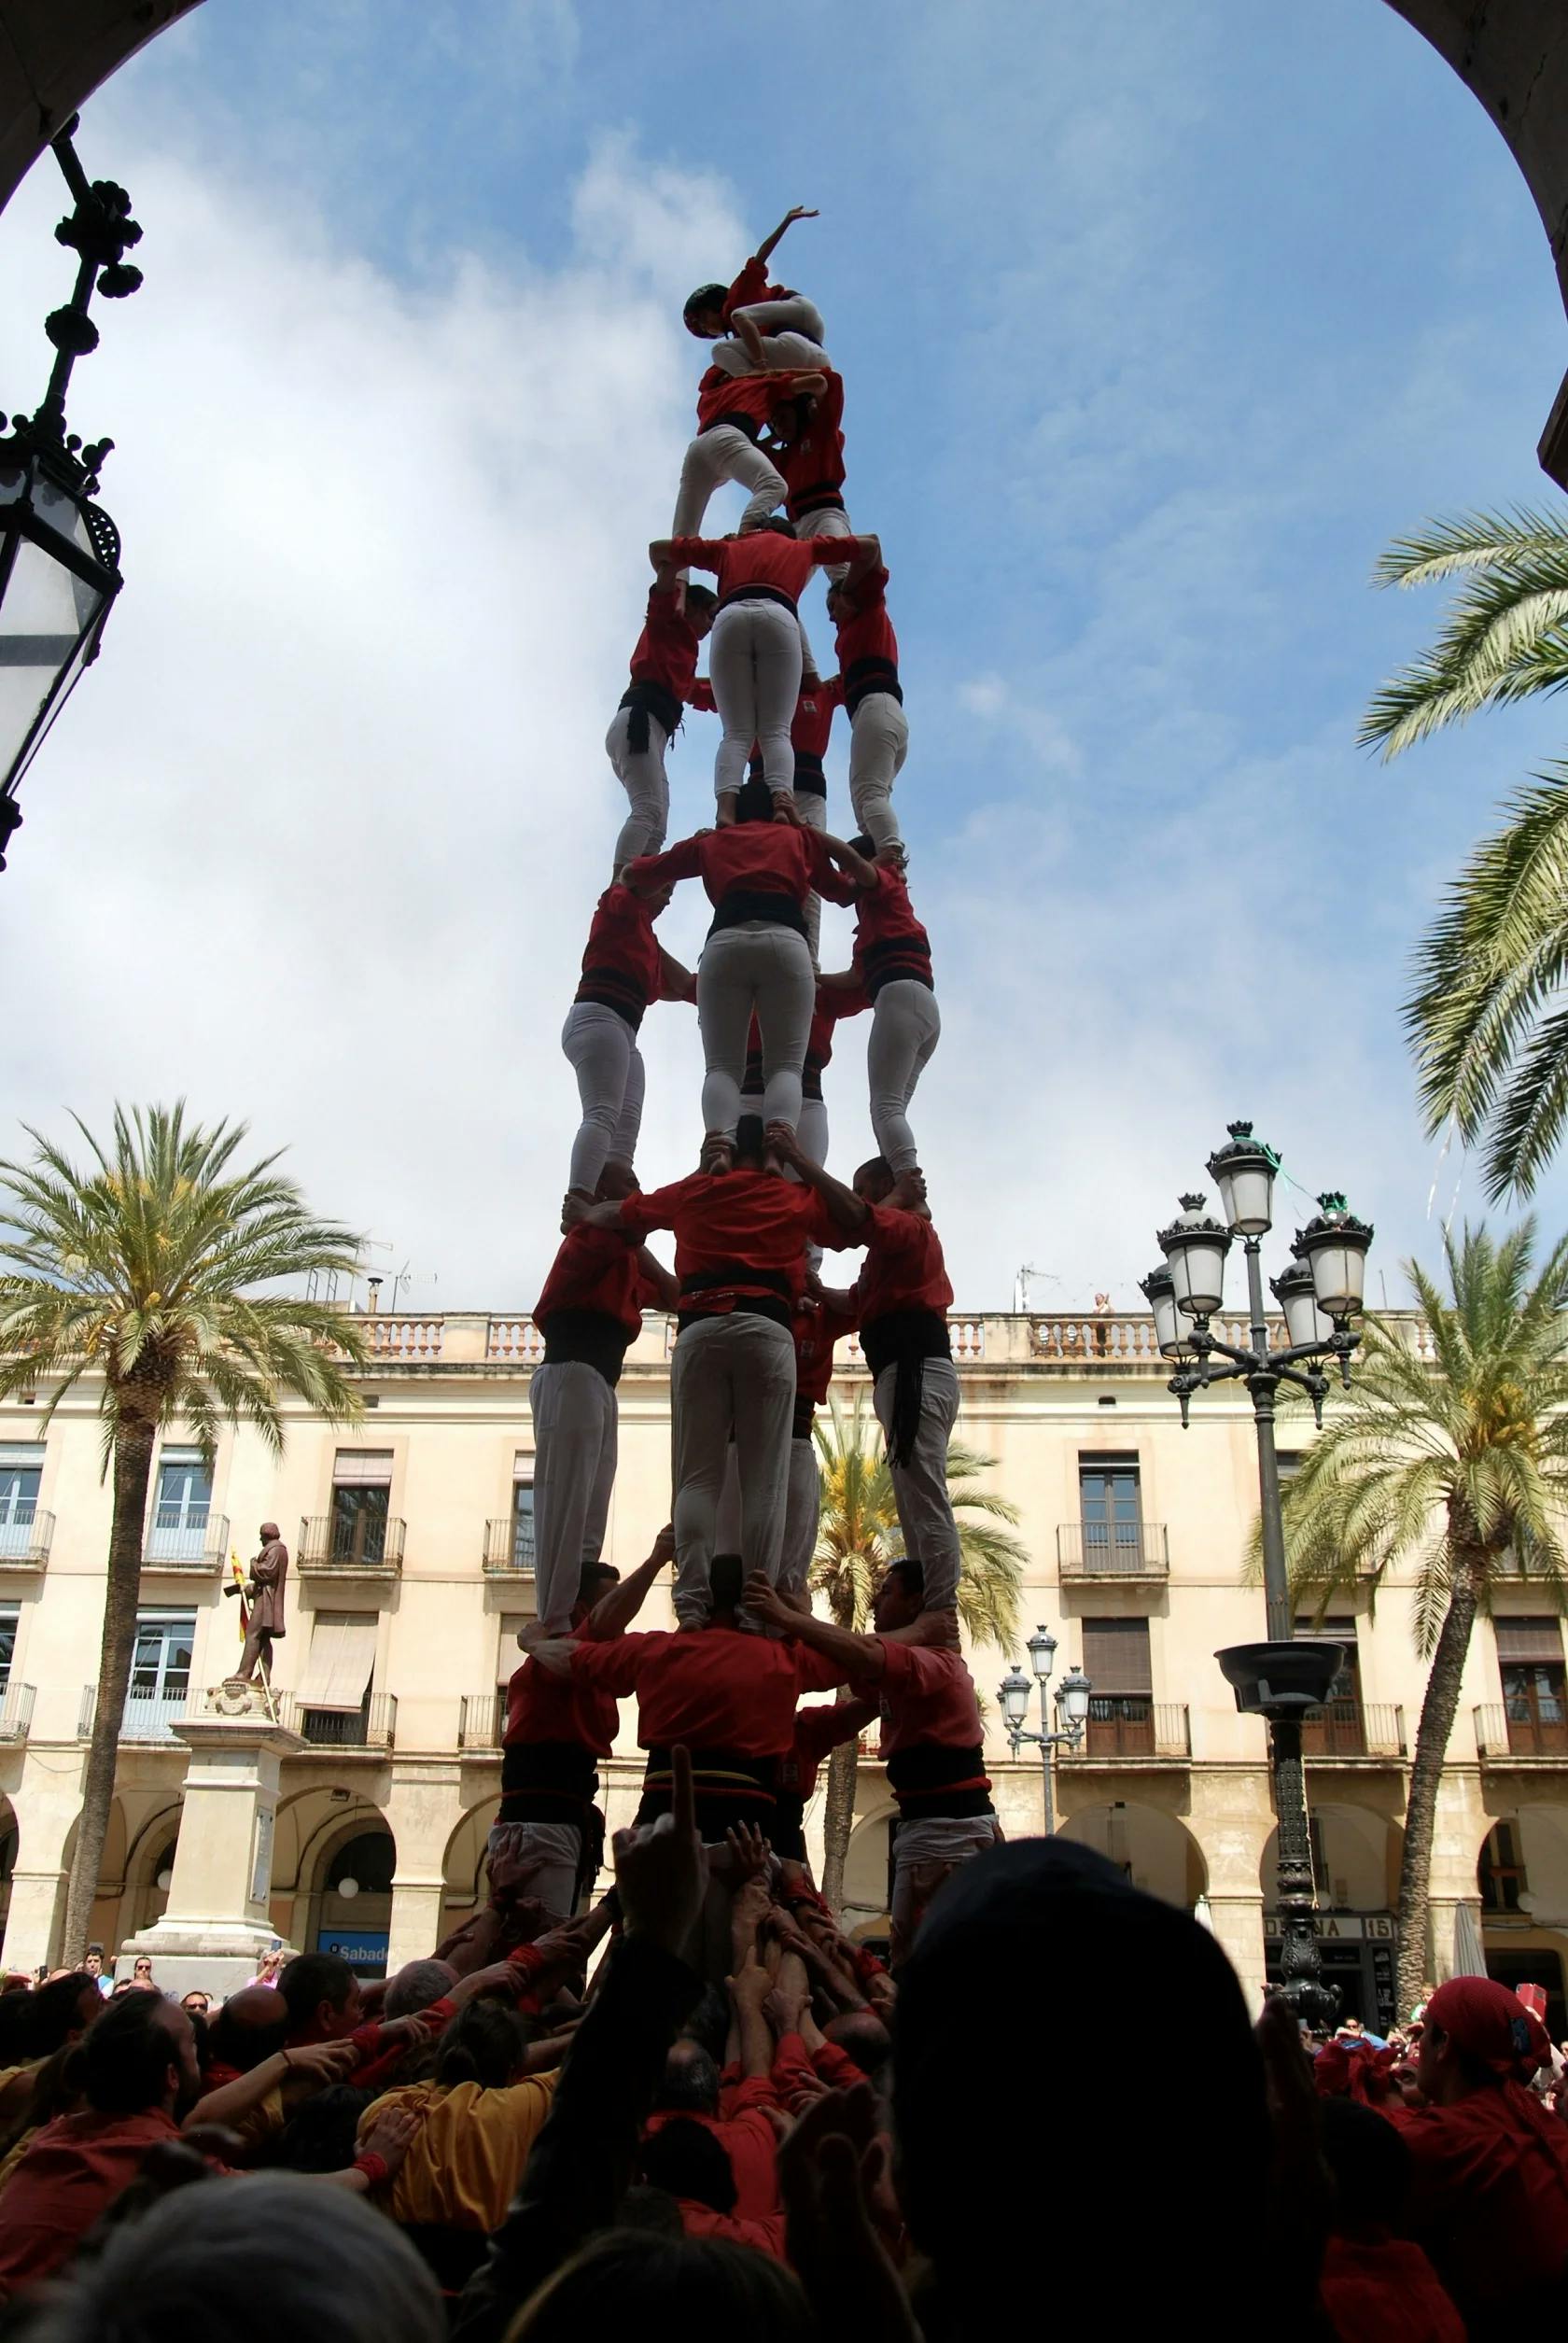 4 de 8 descarregat pels Castellers de Barcelona a la diada de St. Jordi a Vilanova i la Geltrú